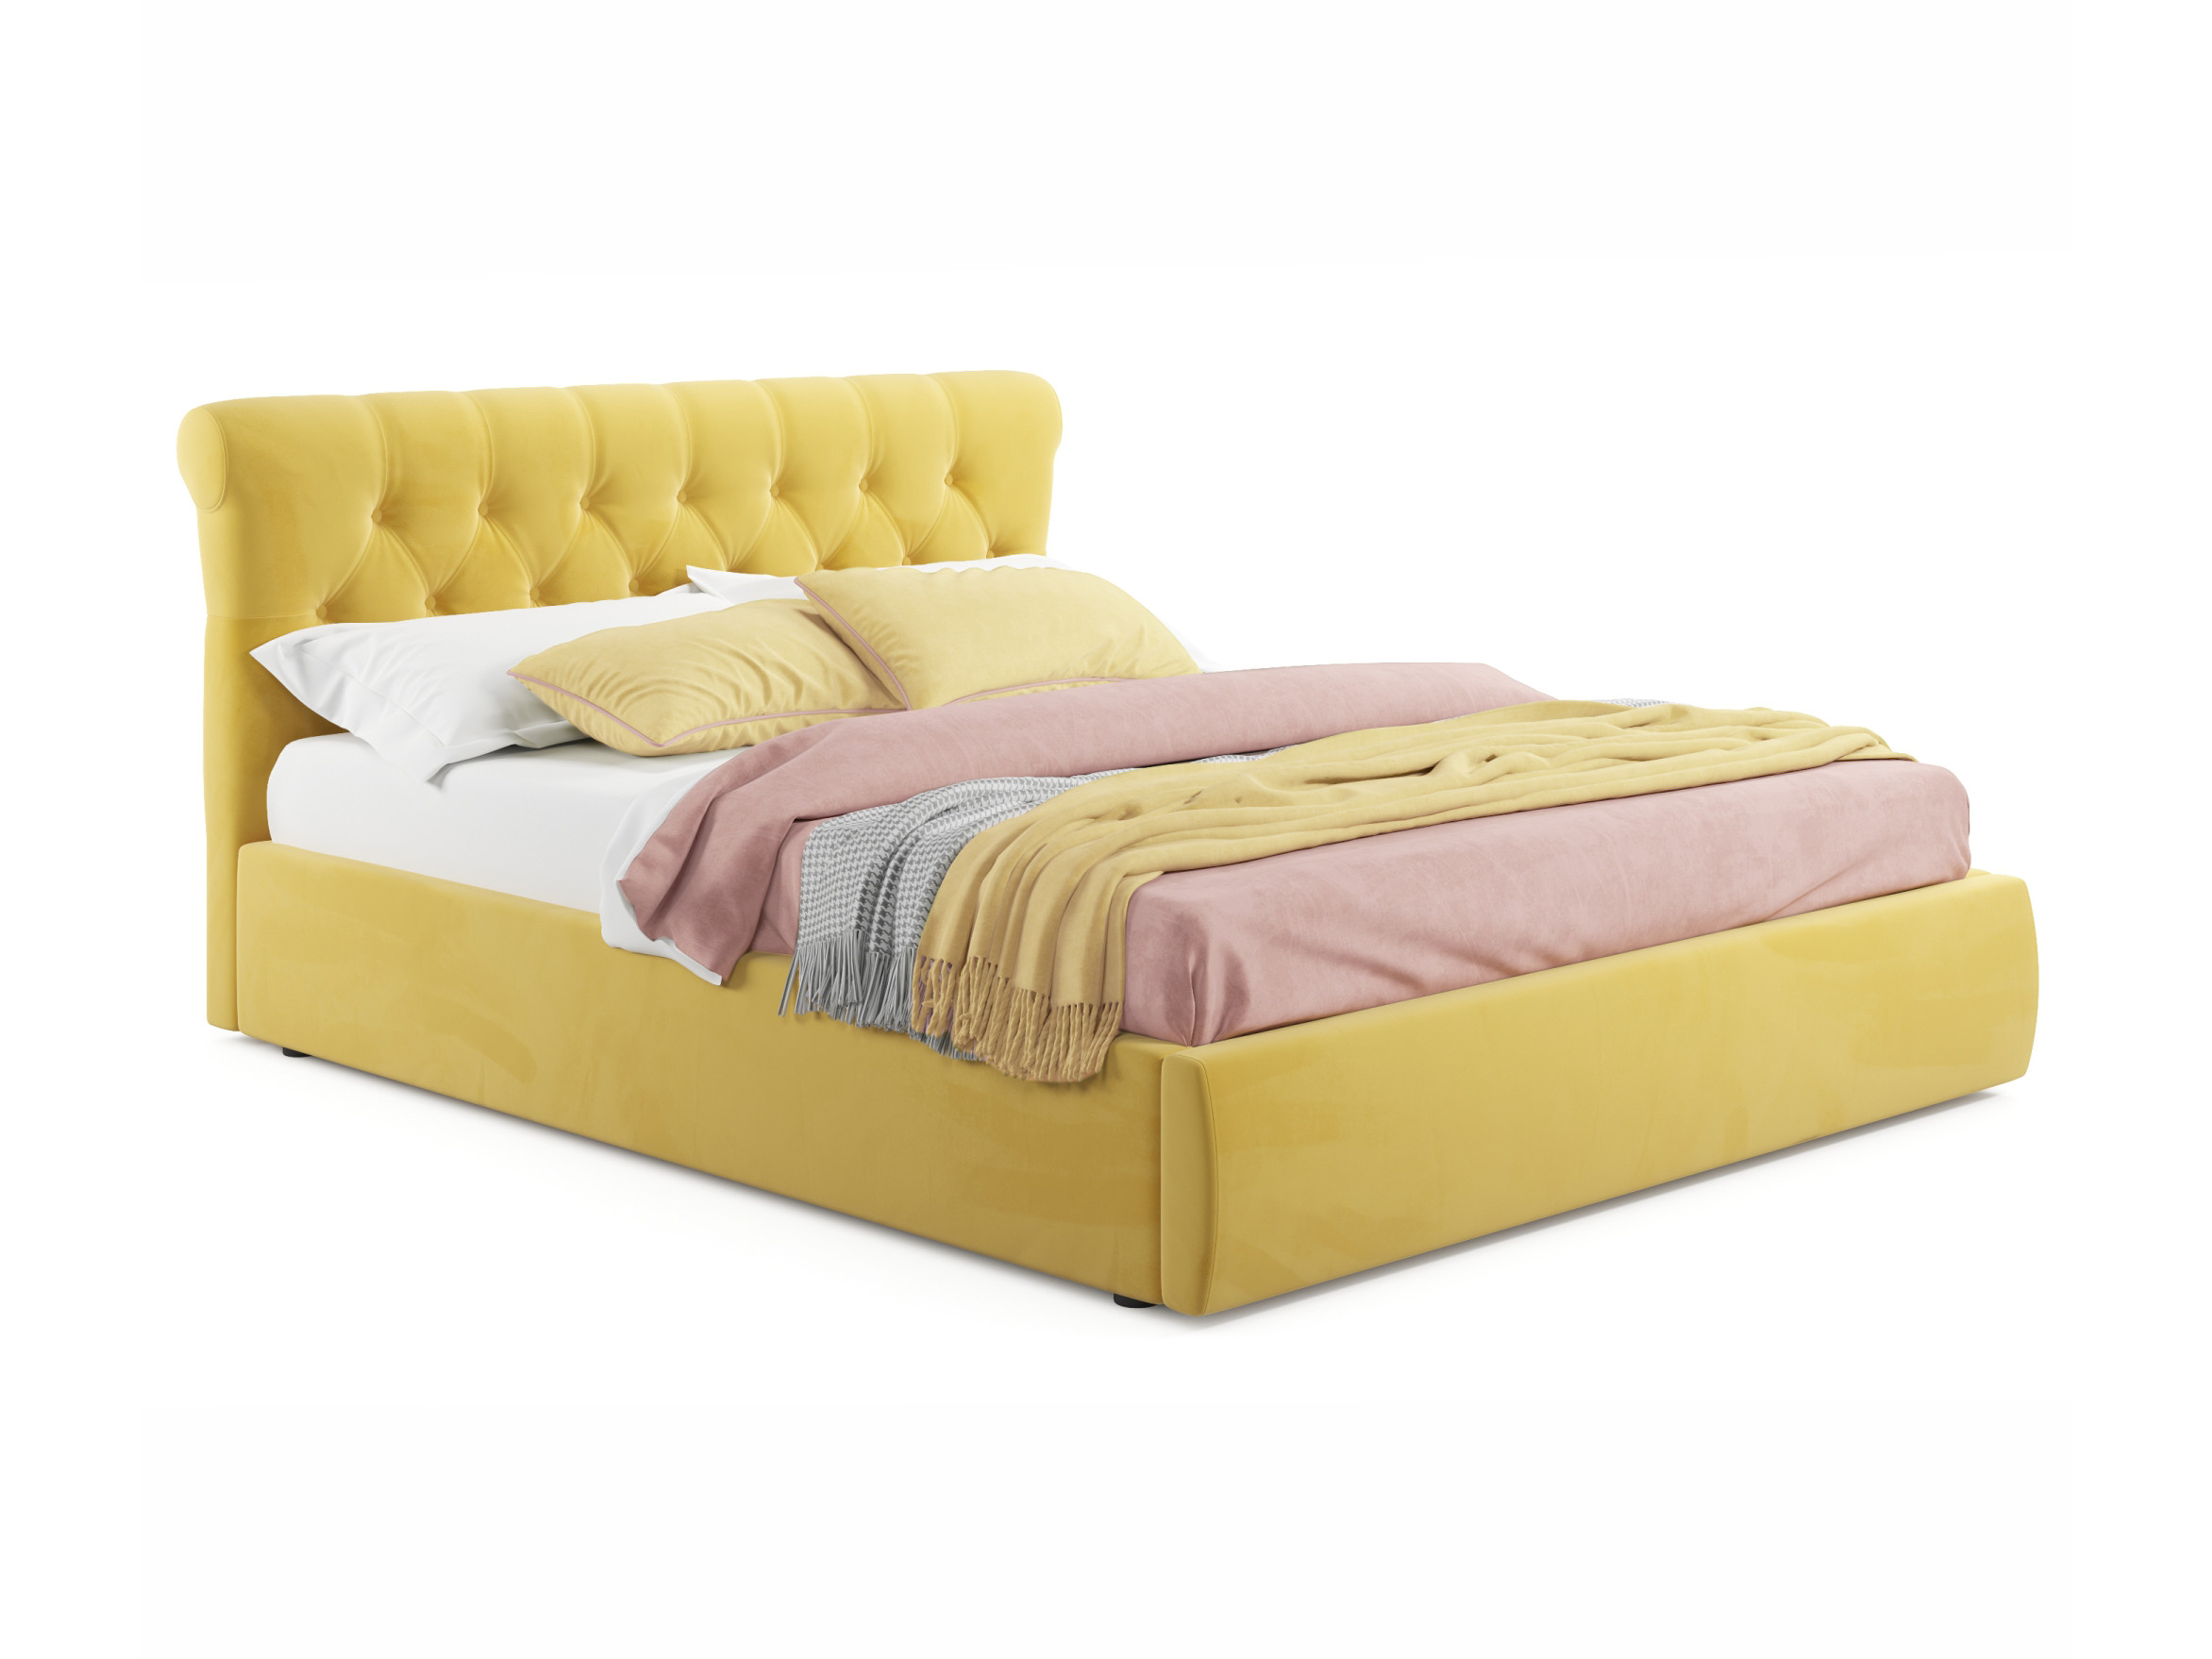 Мягкая кровать Ameli 1800 желтая с подъемным механизмом желтый, Желтый, Велюр, ДСП мягкая кровать ameli 1400 желтая с подъемным механизмом желтый желтый велюр дсп